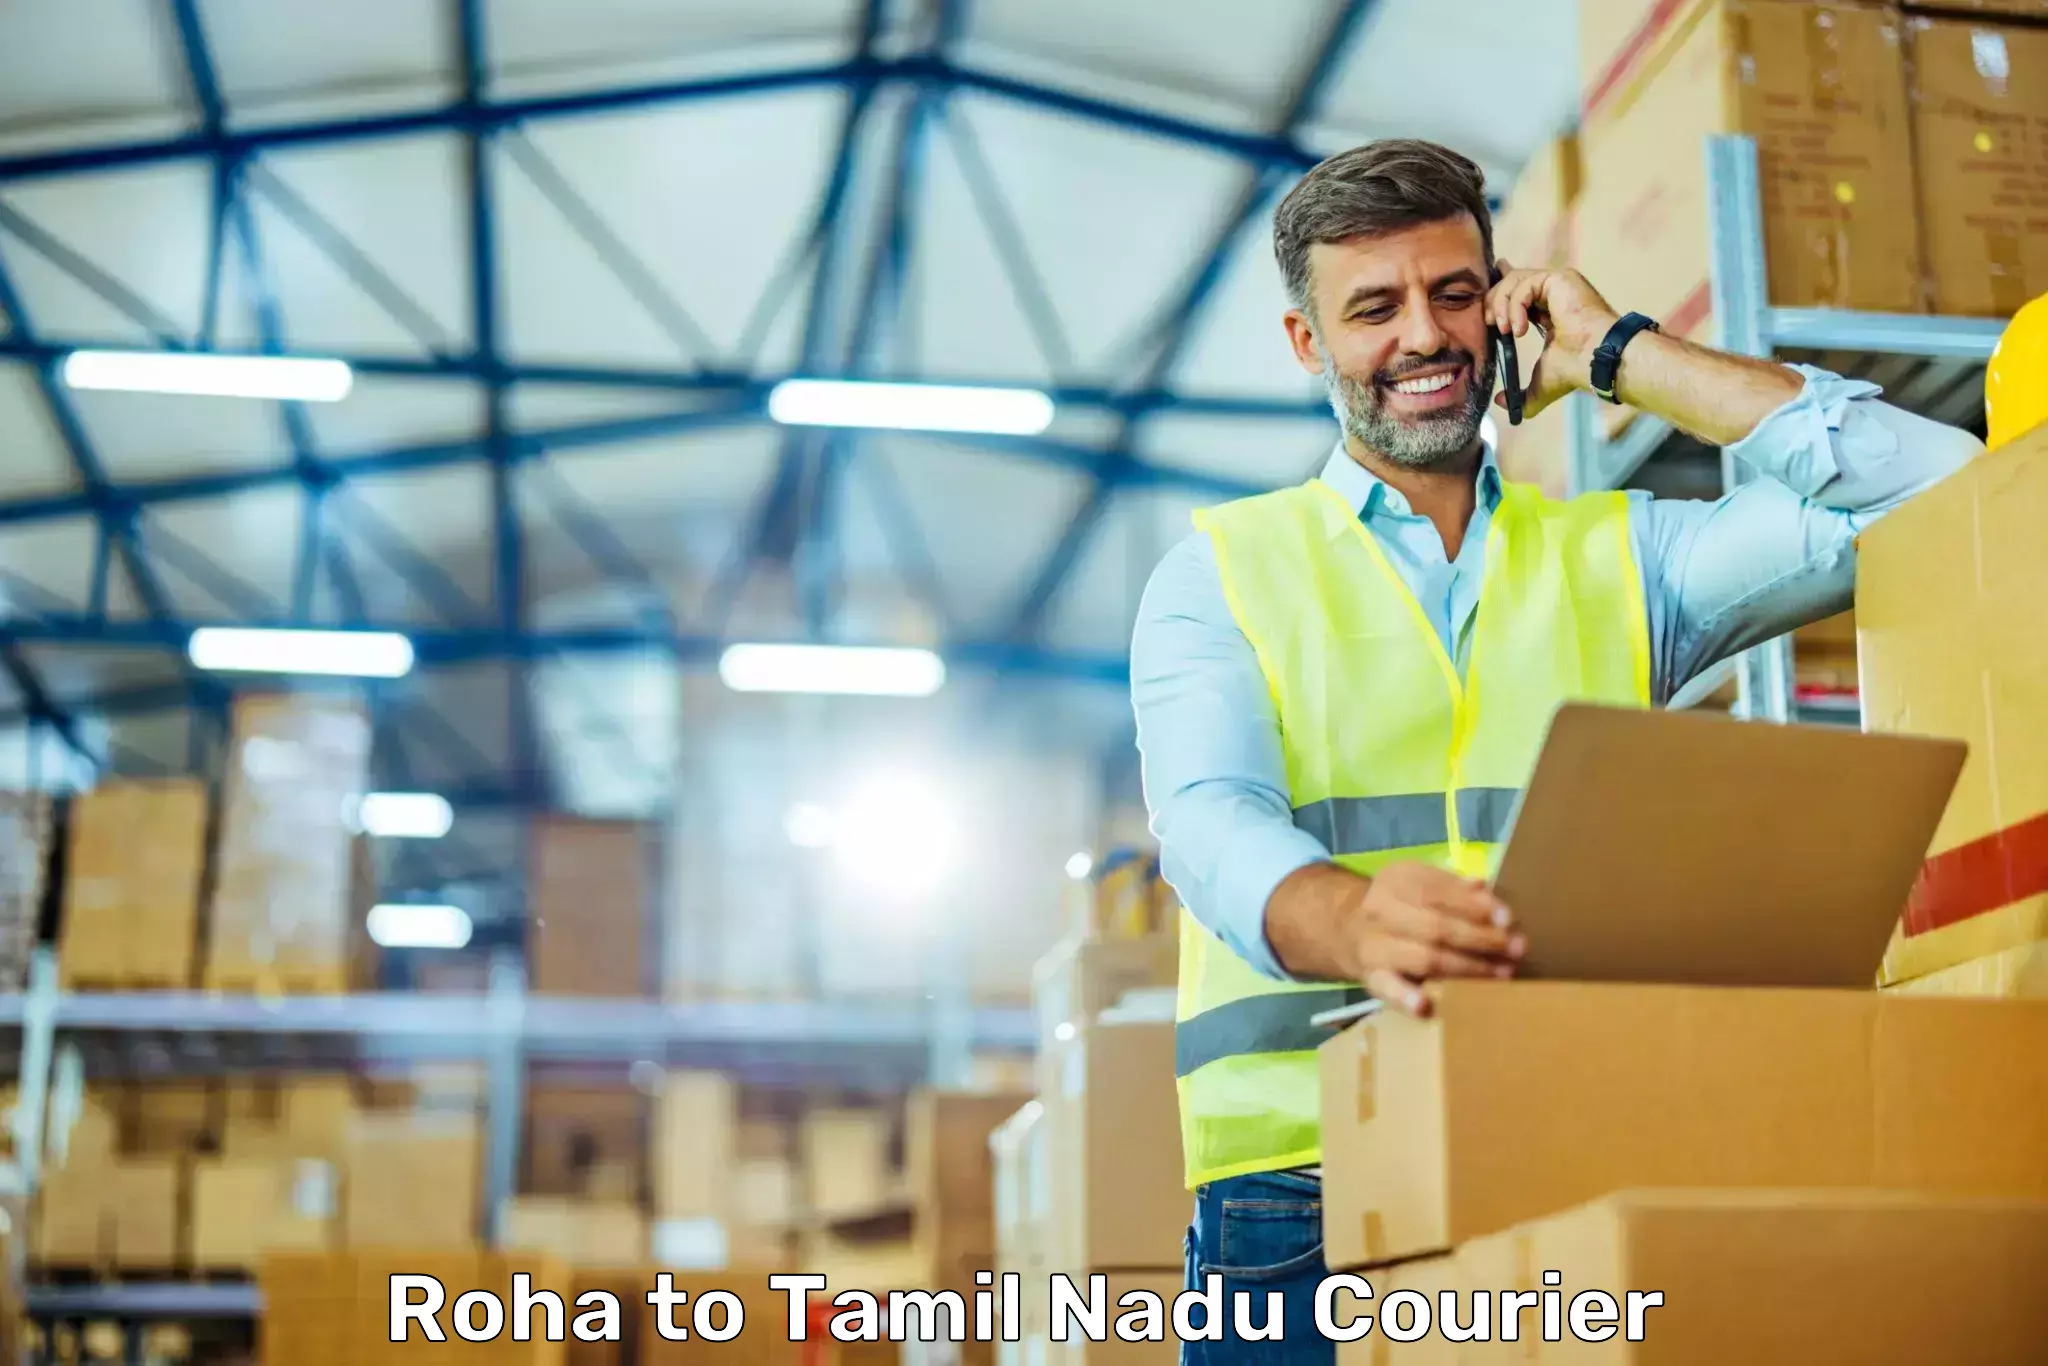 Customized shipping options Roha to Sathyamangalam